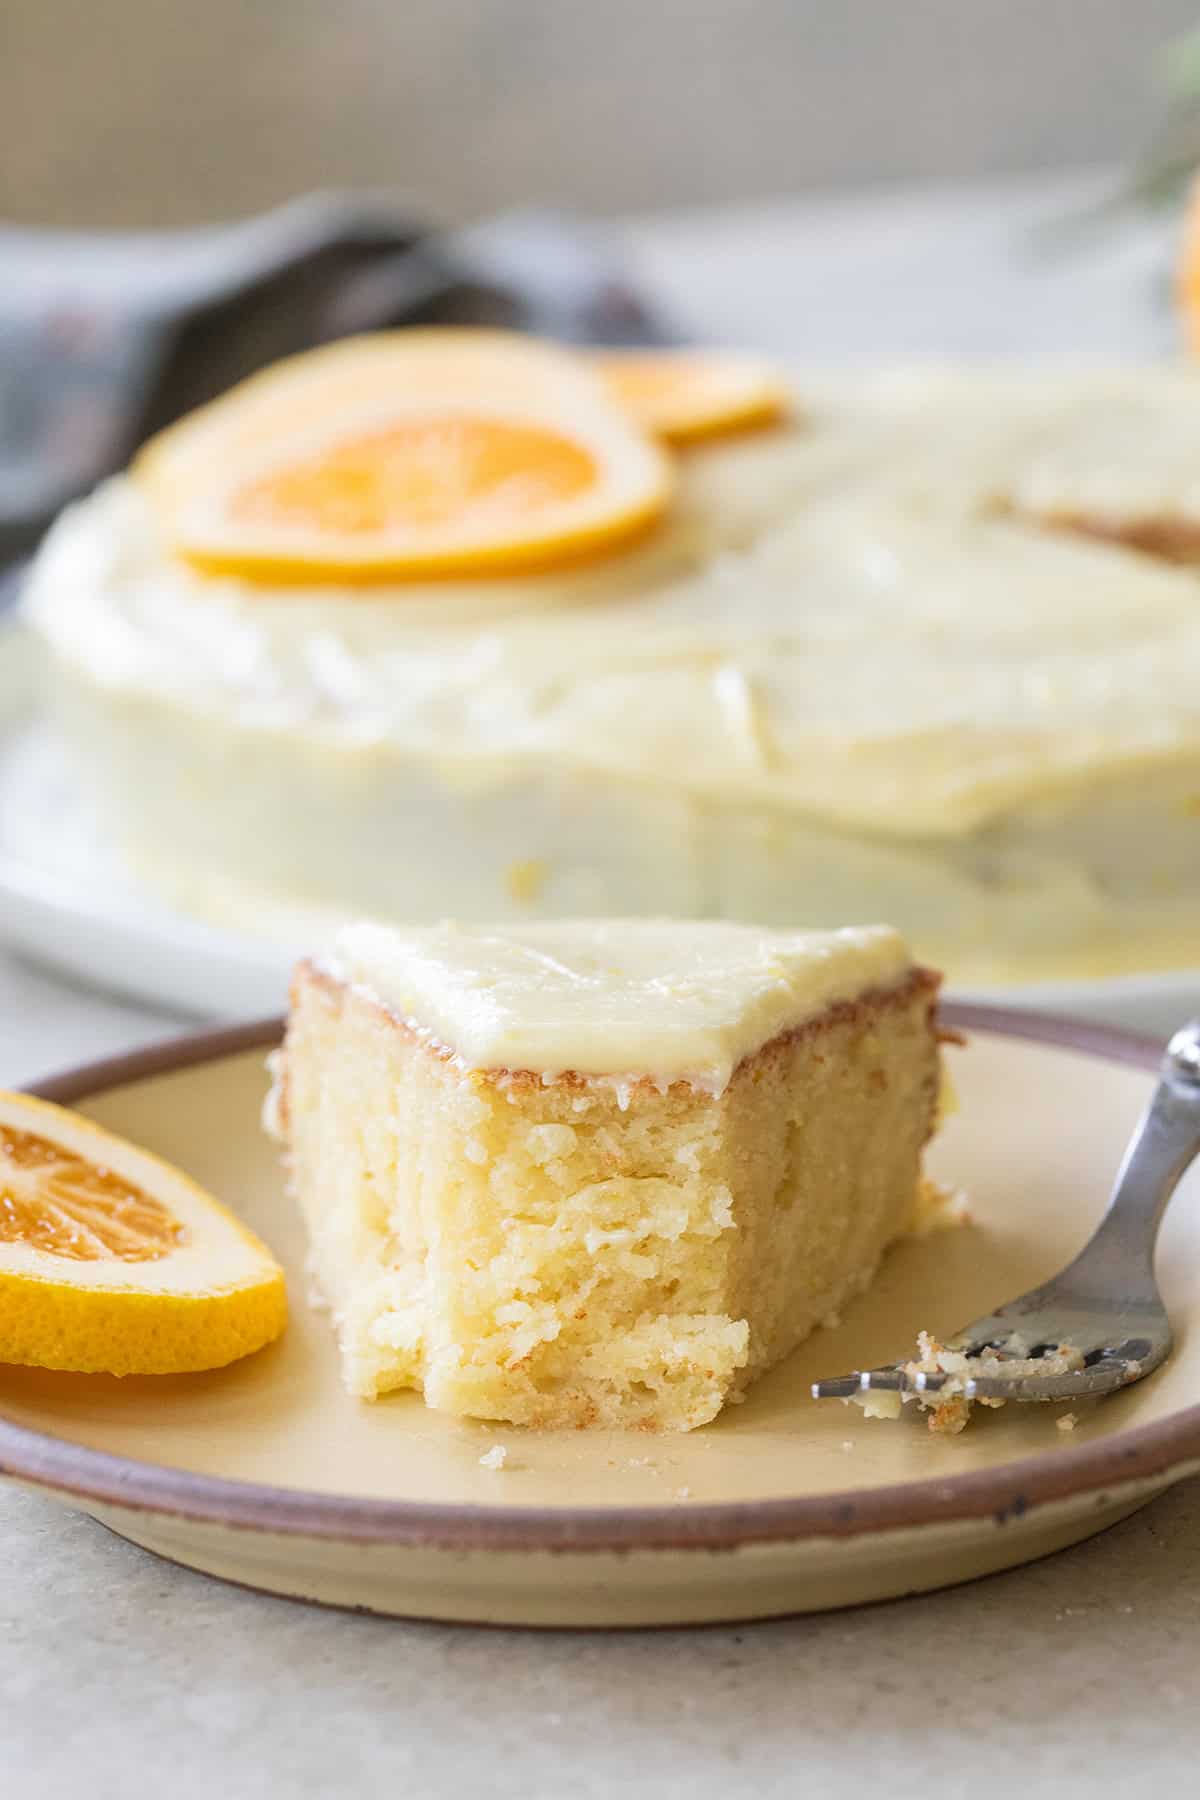 Ricotta cake with orange zest and orange icing.